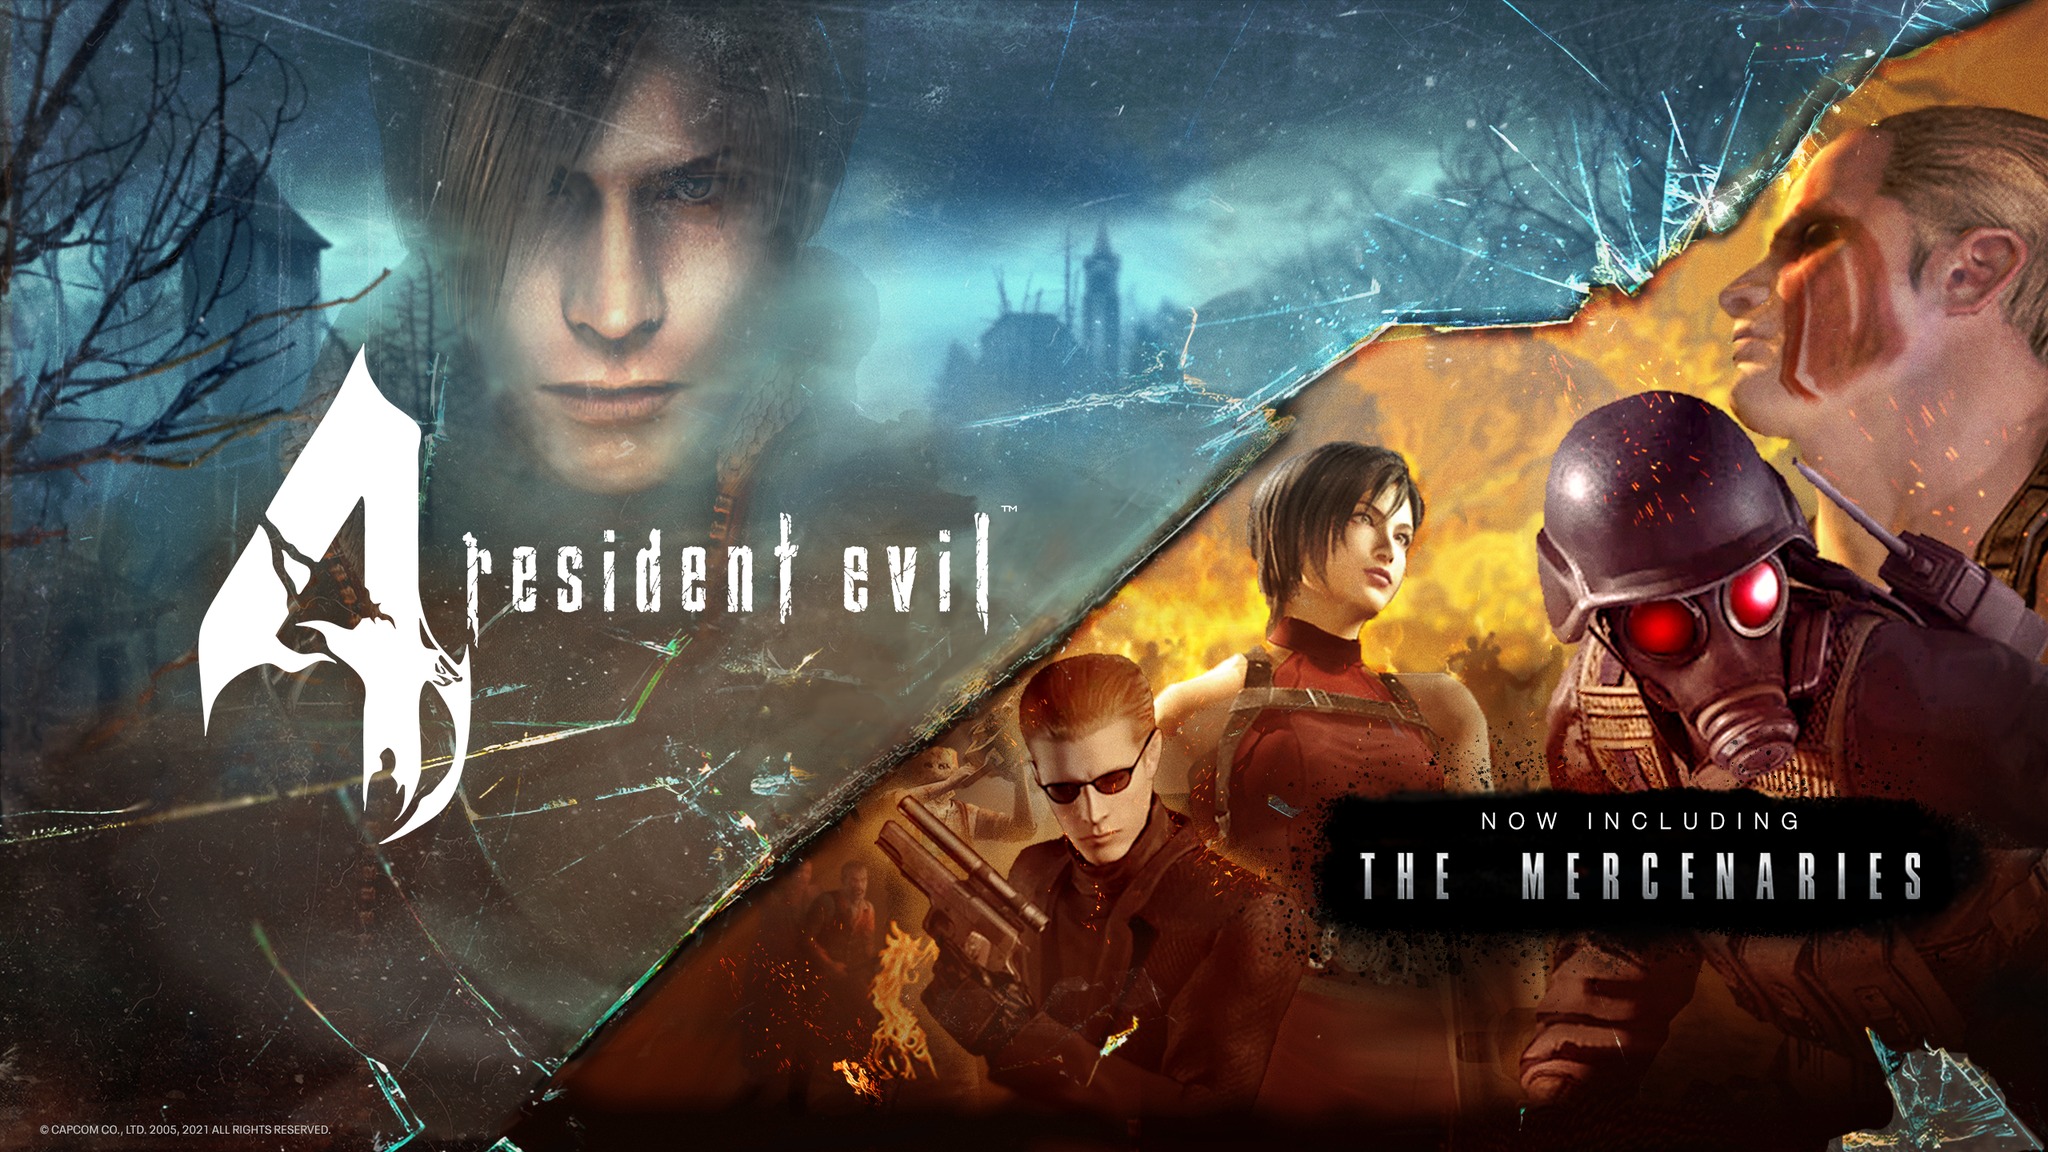 Resident Evil 4 VR got mercenaries mode